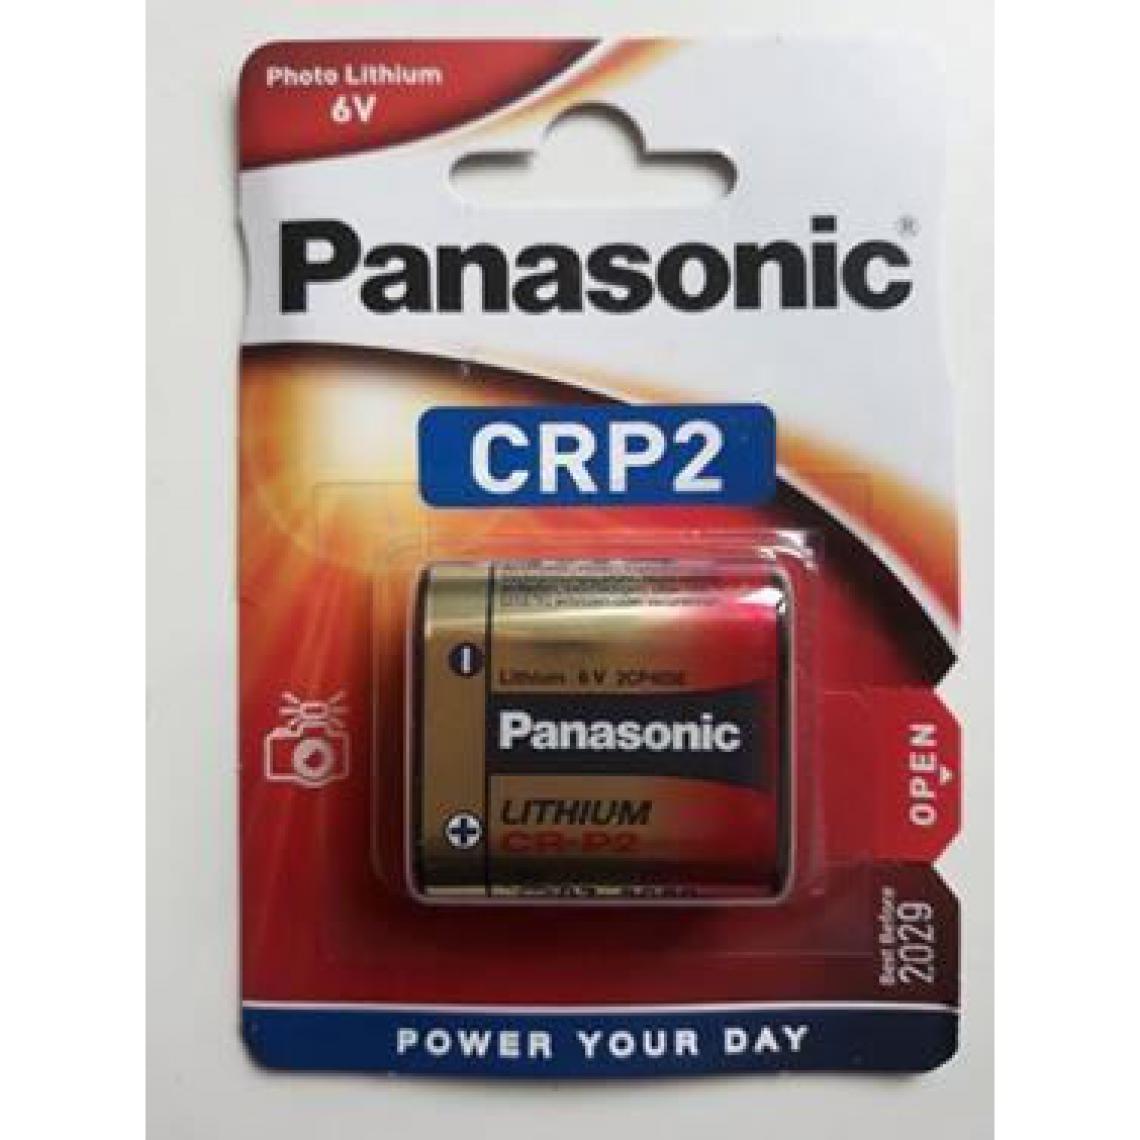 Panasonic - Rasage Electrique - 1 PILE 223 Panasonic CRP2 - Piles rechargeables